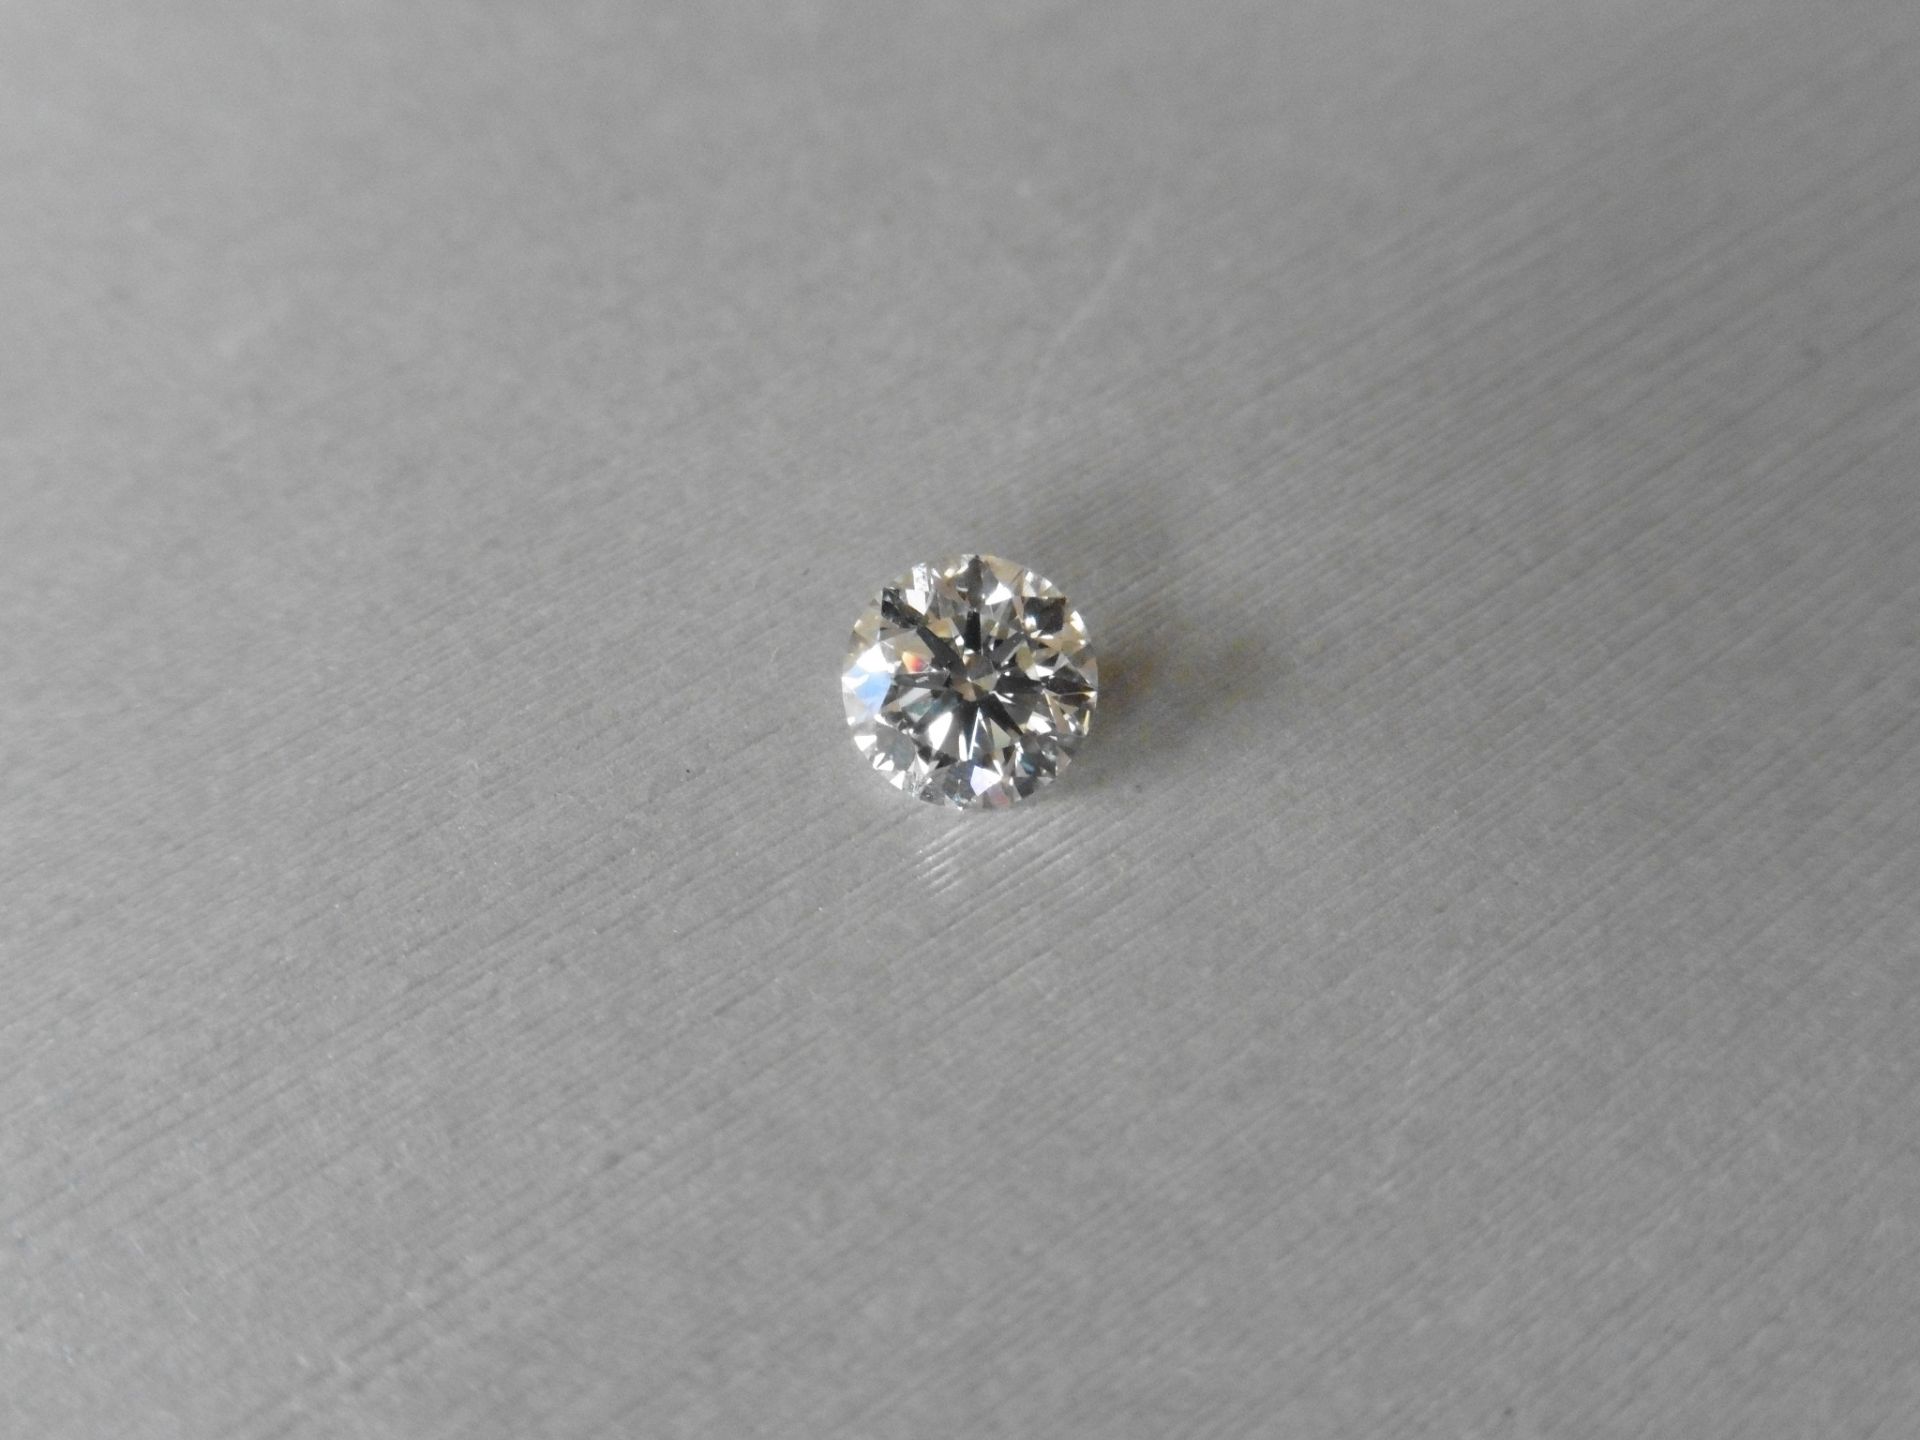 1.21ct single brilliant cut diamond, K colour VS2 clarity. 6.79 mm x 6.81mm x 4.22mm. Suitable for